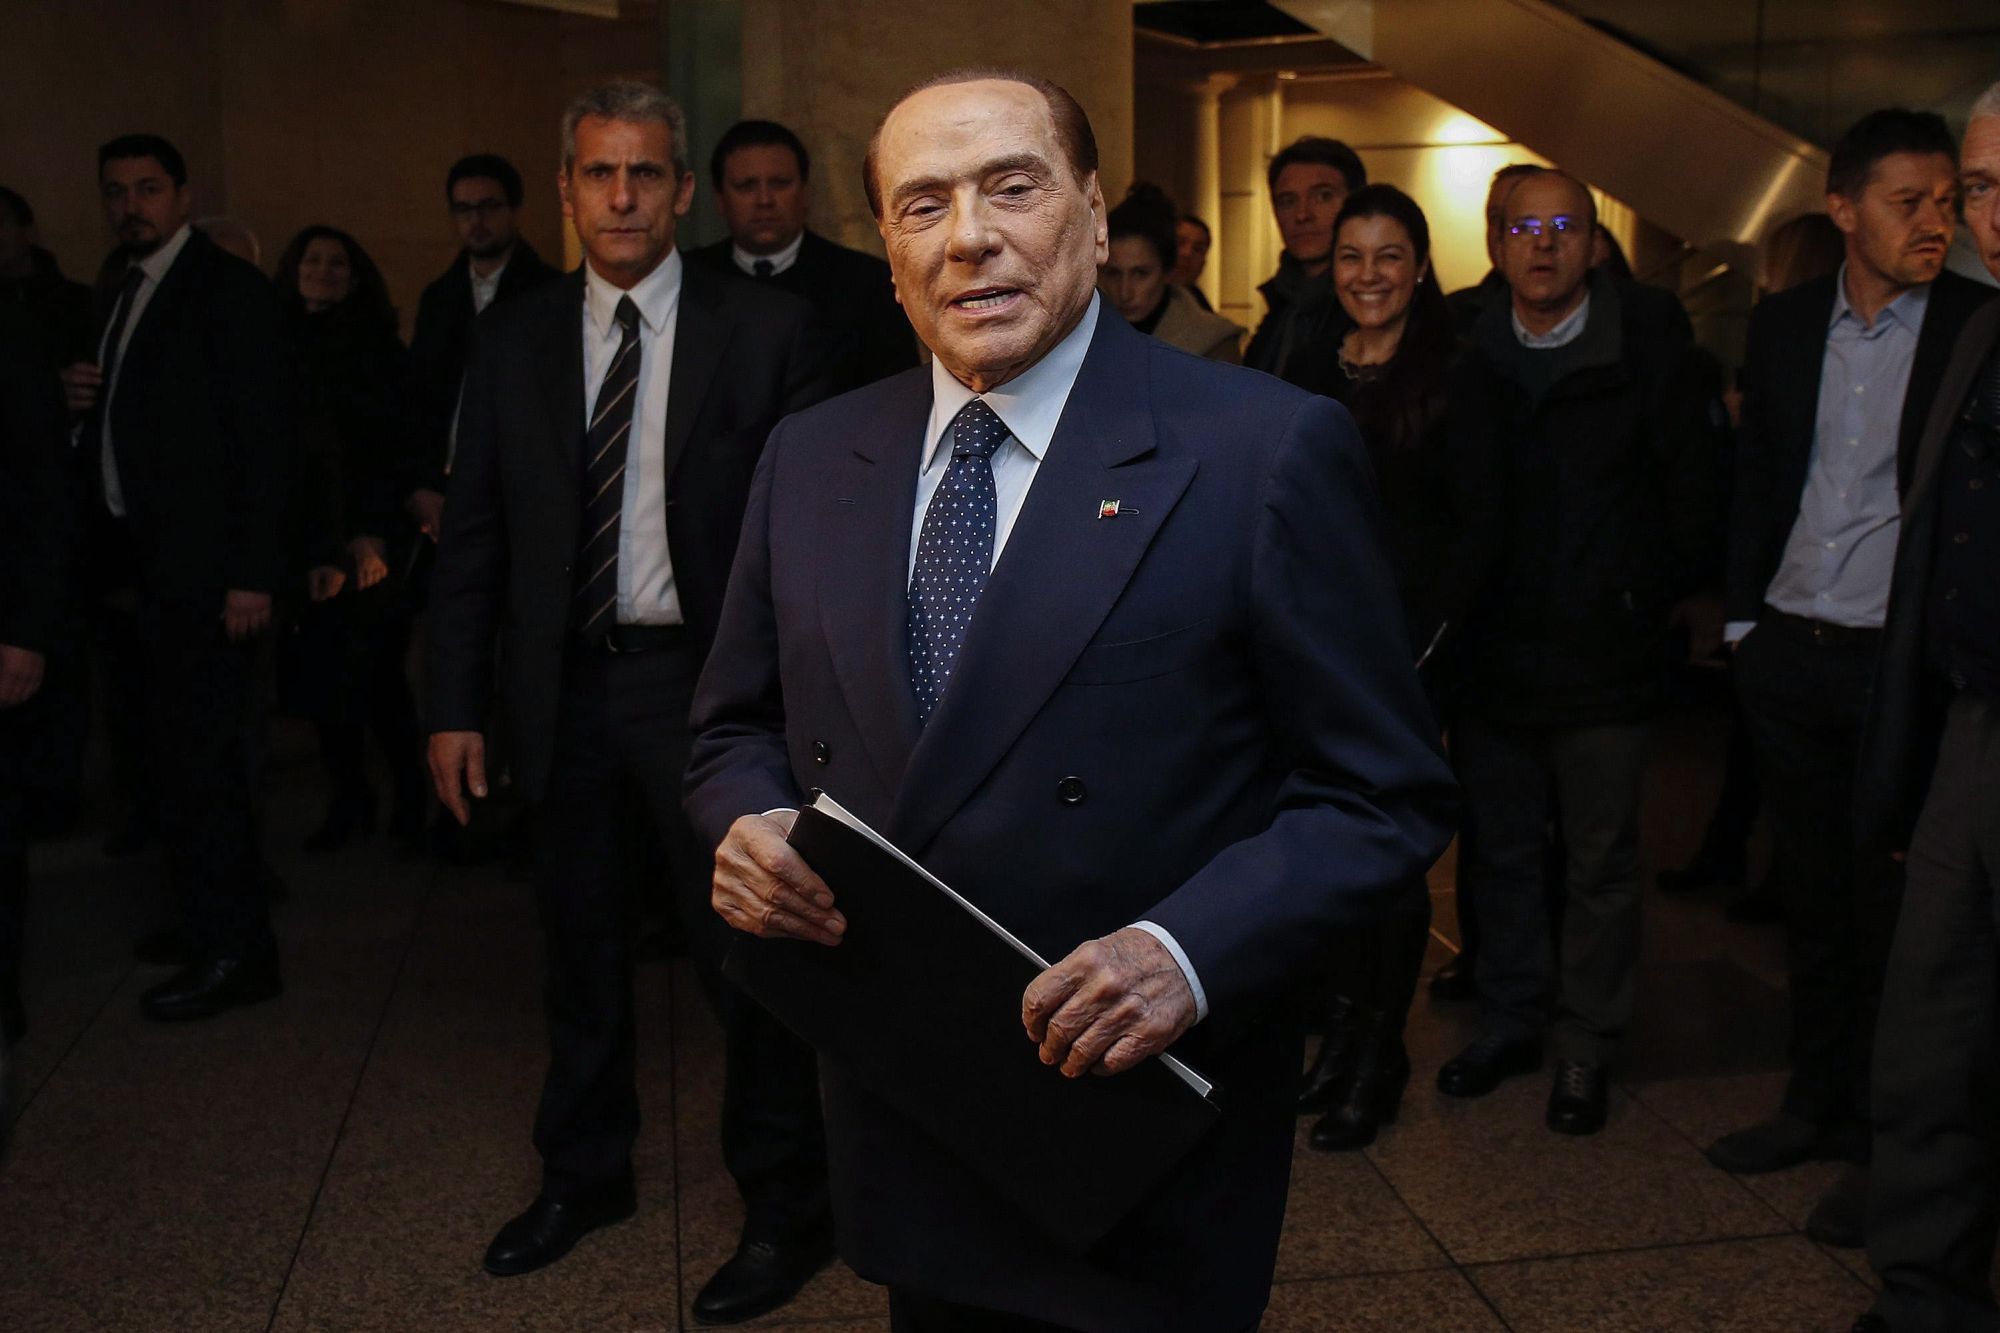 Silvio Berlusconi volt olasz miniszterelnök, a Forza Italia (FI) párt vezetője a jobbközép pártok közös választási kampányrendezvényét követő sajtótájékoztatóra érkezik Rómában, 2018. március 1-jén. A kormányfői posztot eddig négyszer is betöltő, 81 éves politikus két nappal korábban bejelentette, hogy miután 2019-ben lejár a közügyektől való eltiltása, újra elvállalná a kormányfői tisztséget egy esetleges előrehozott választáson. 